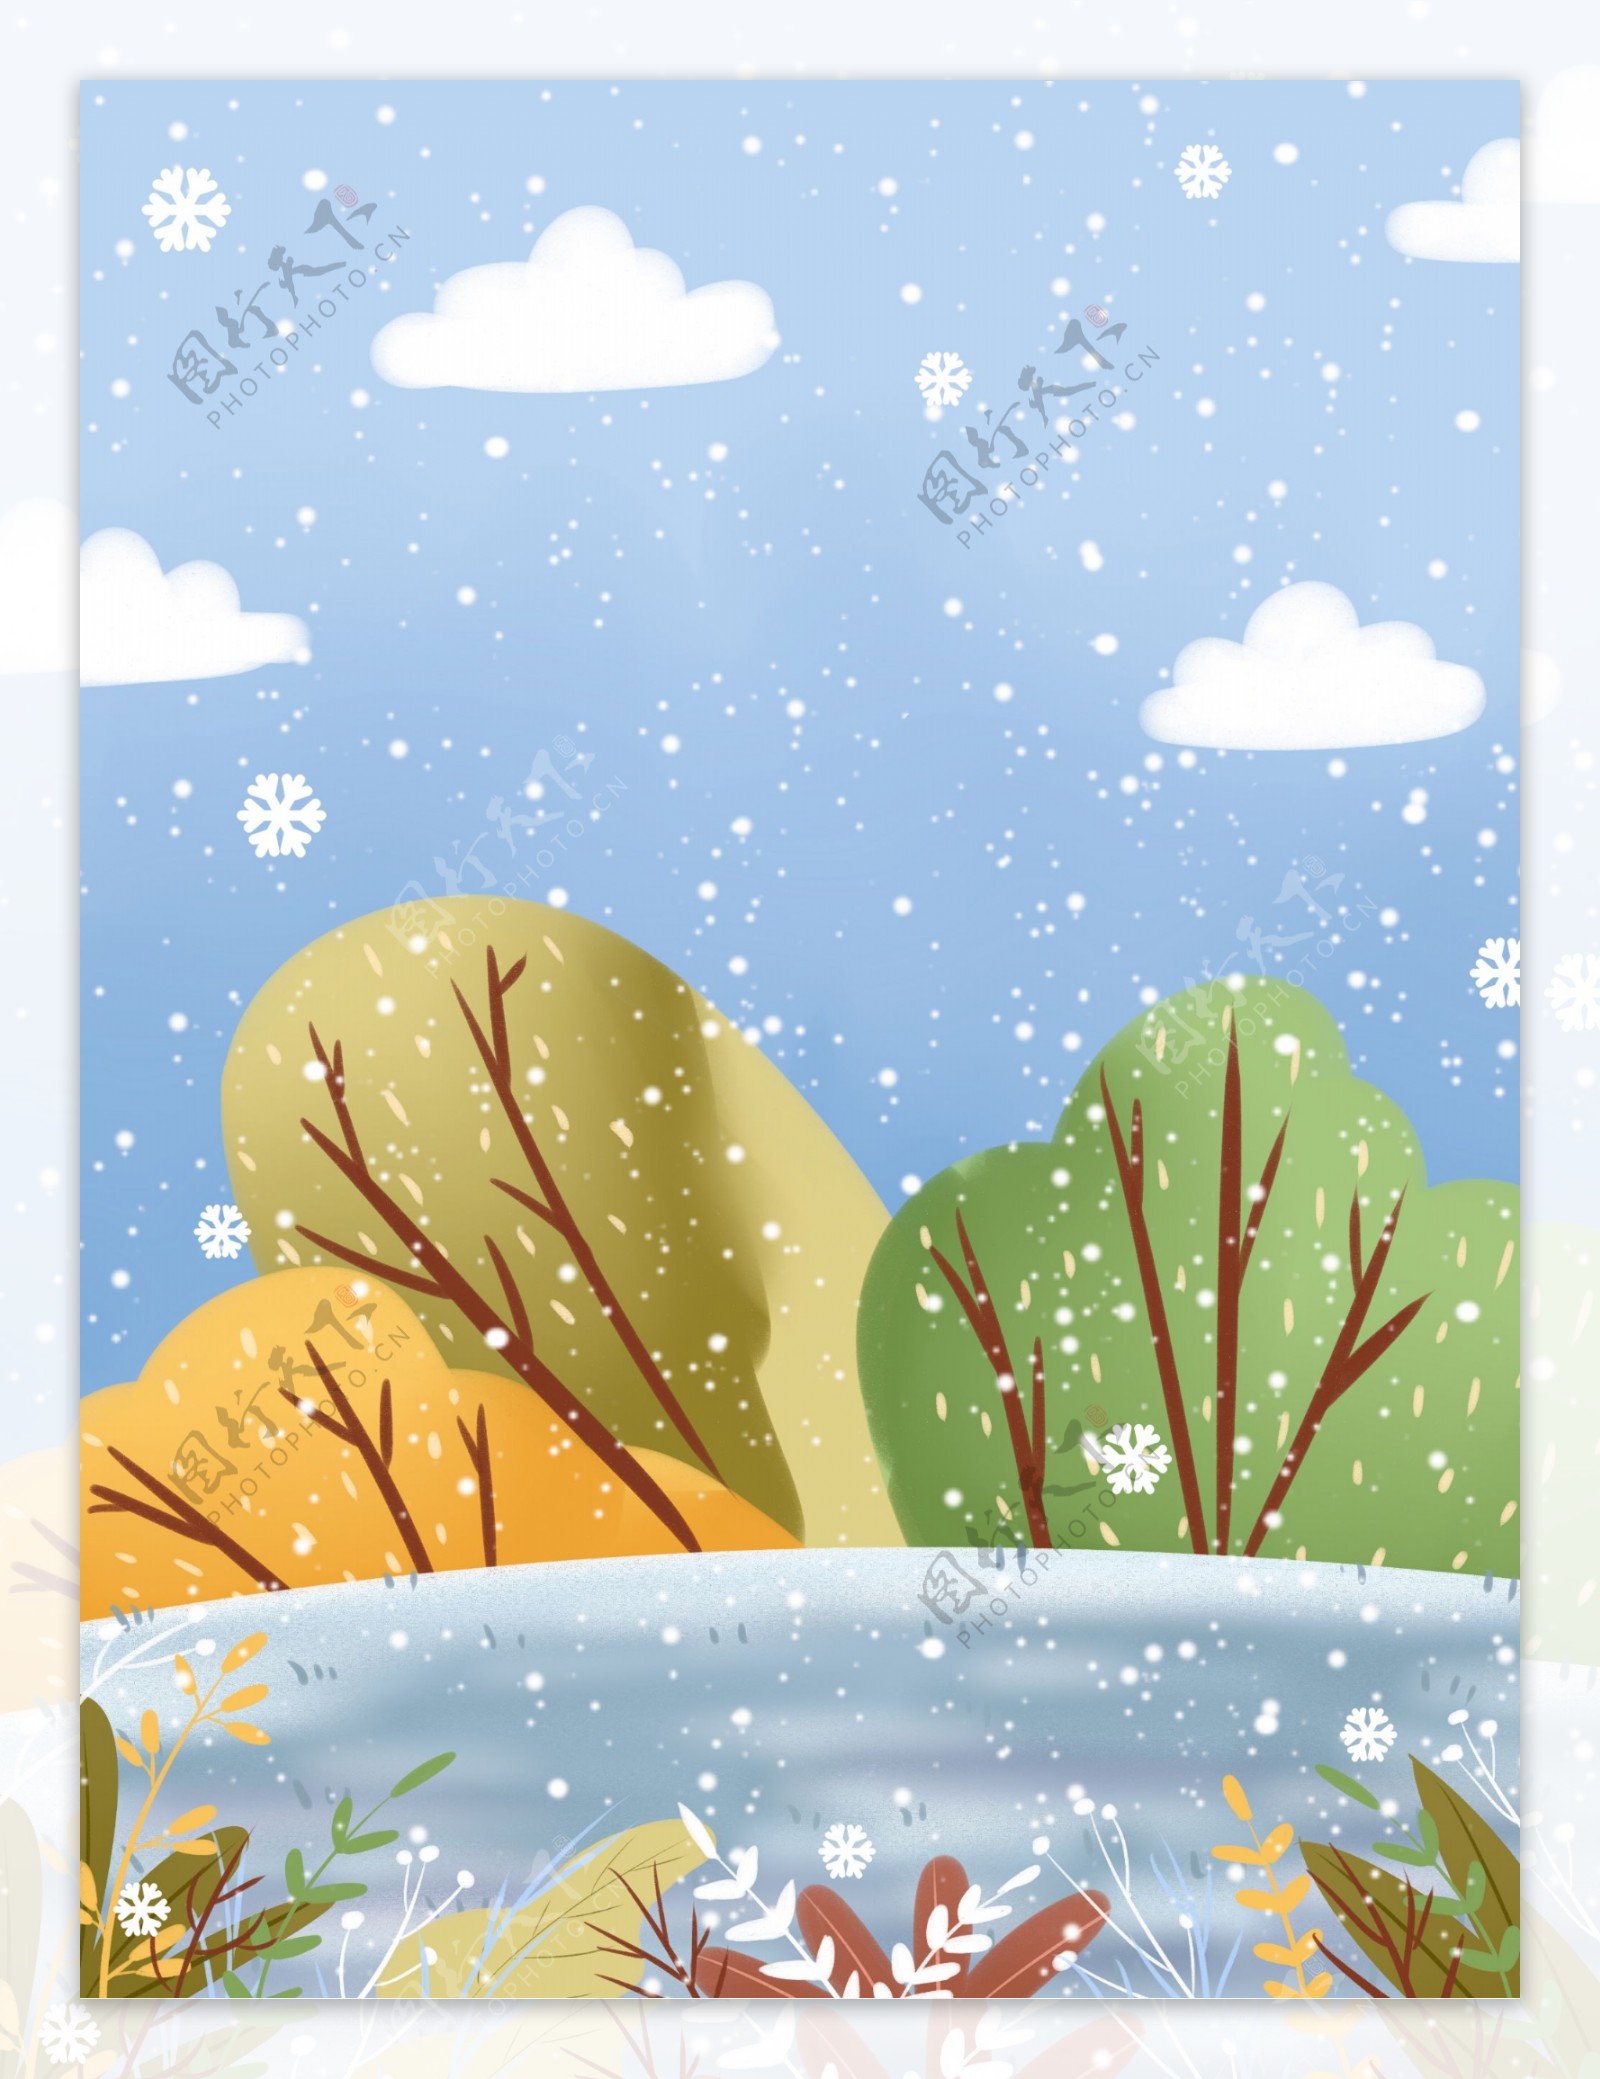 彩绘冬雪小雪背景设计